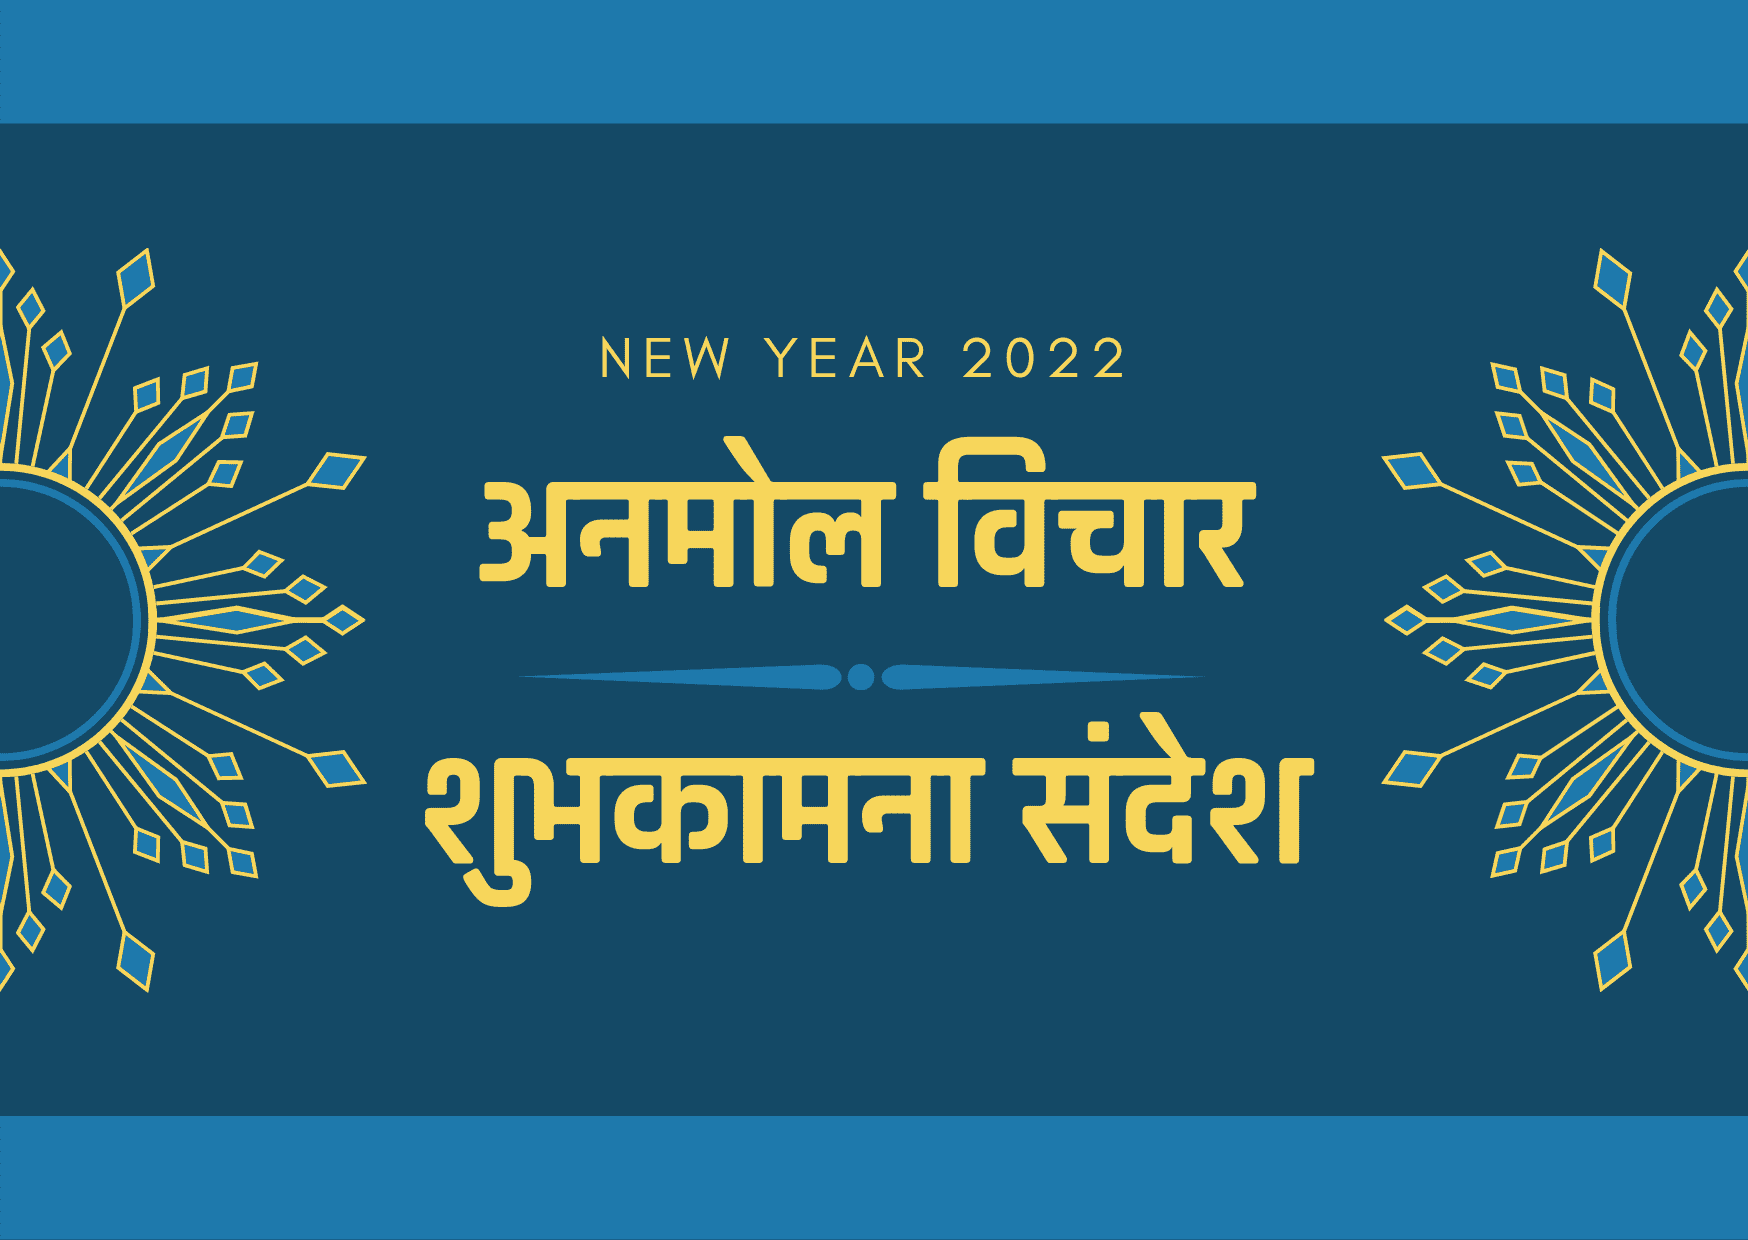 New Year 2022 पर अनमोल विचार और शुभकामना संदेश